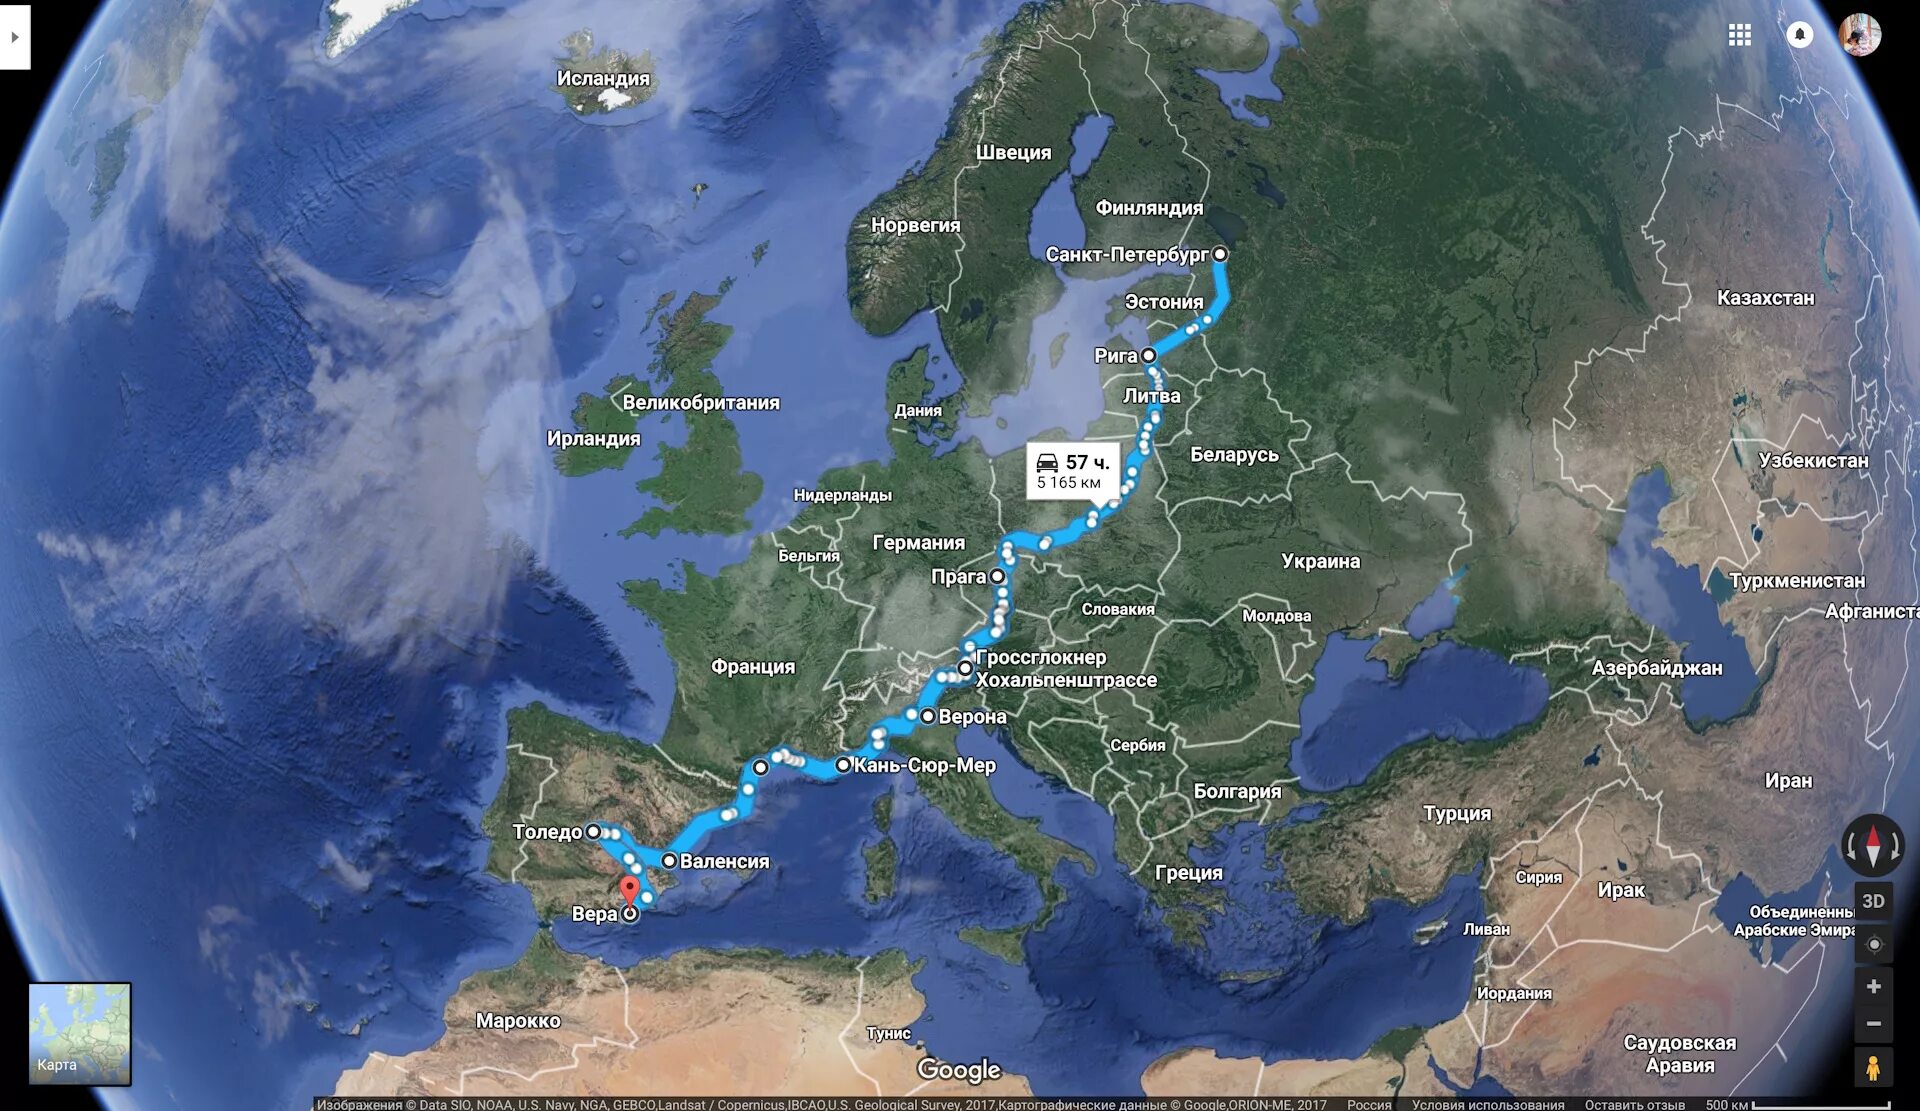 Крайняя западная точка европы. Маршрут путешествия по Европе. Туристический маршрут по Европе. Центральная точка Европы. Автопутешествия по России маршруты.